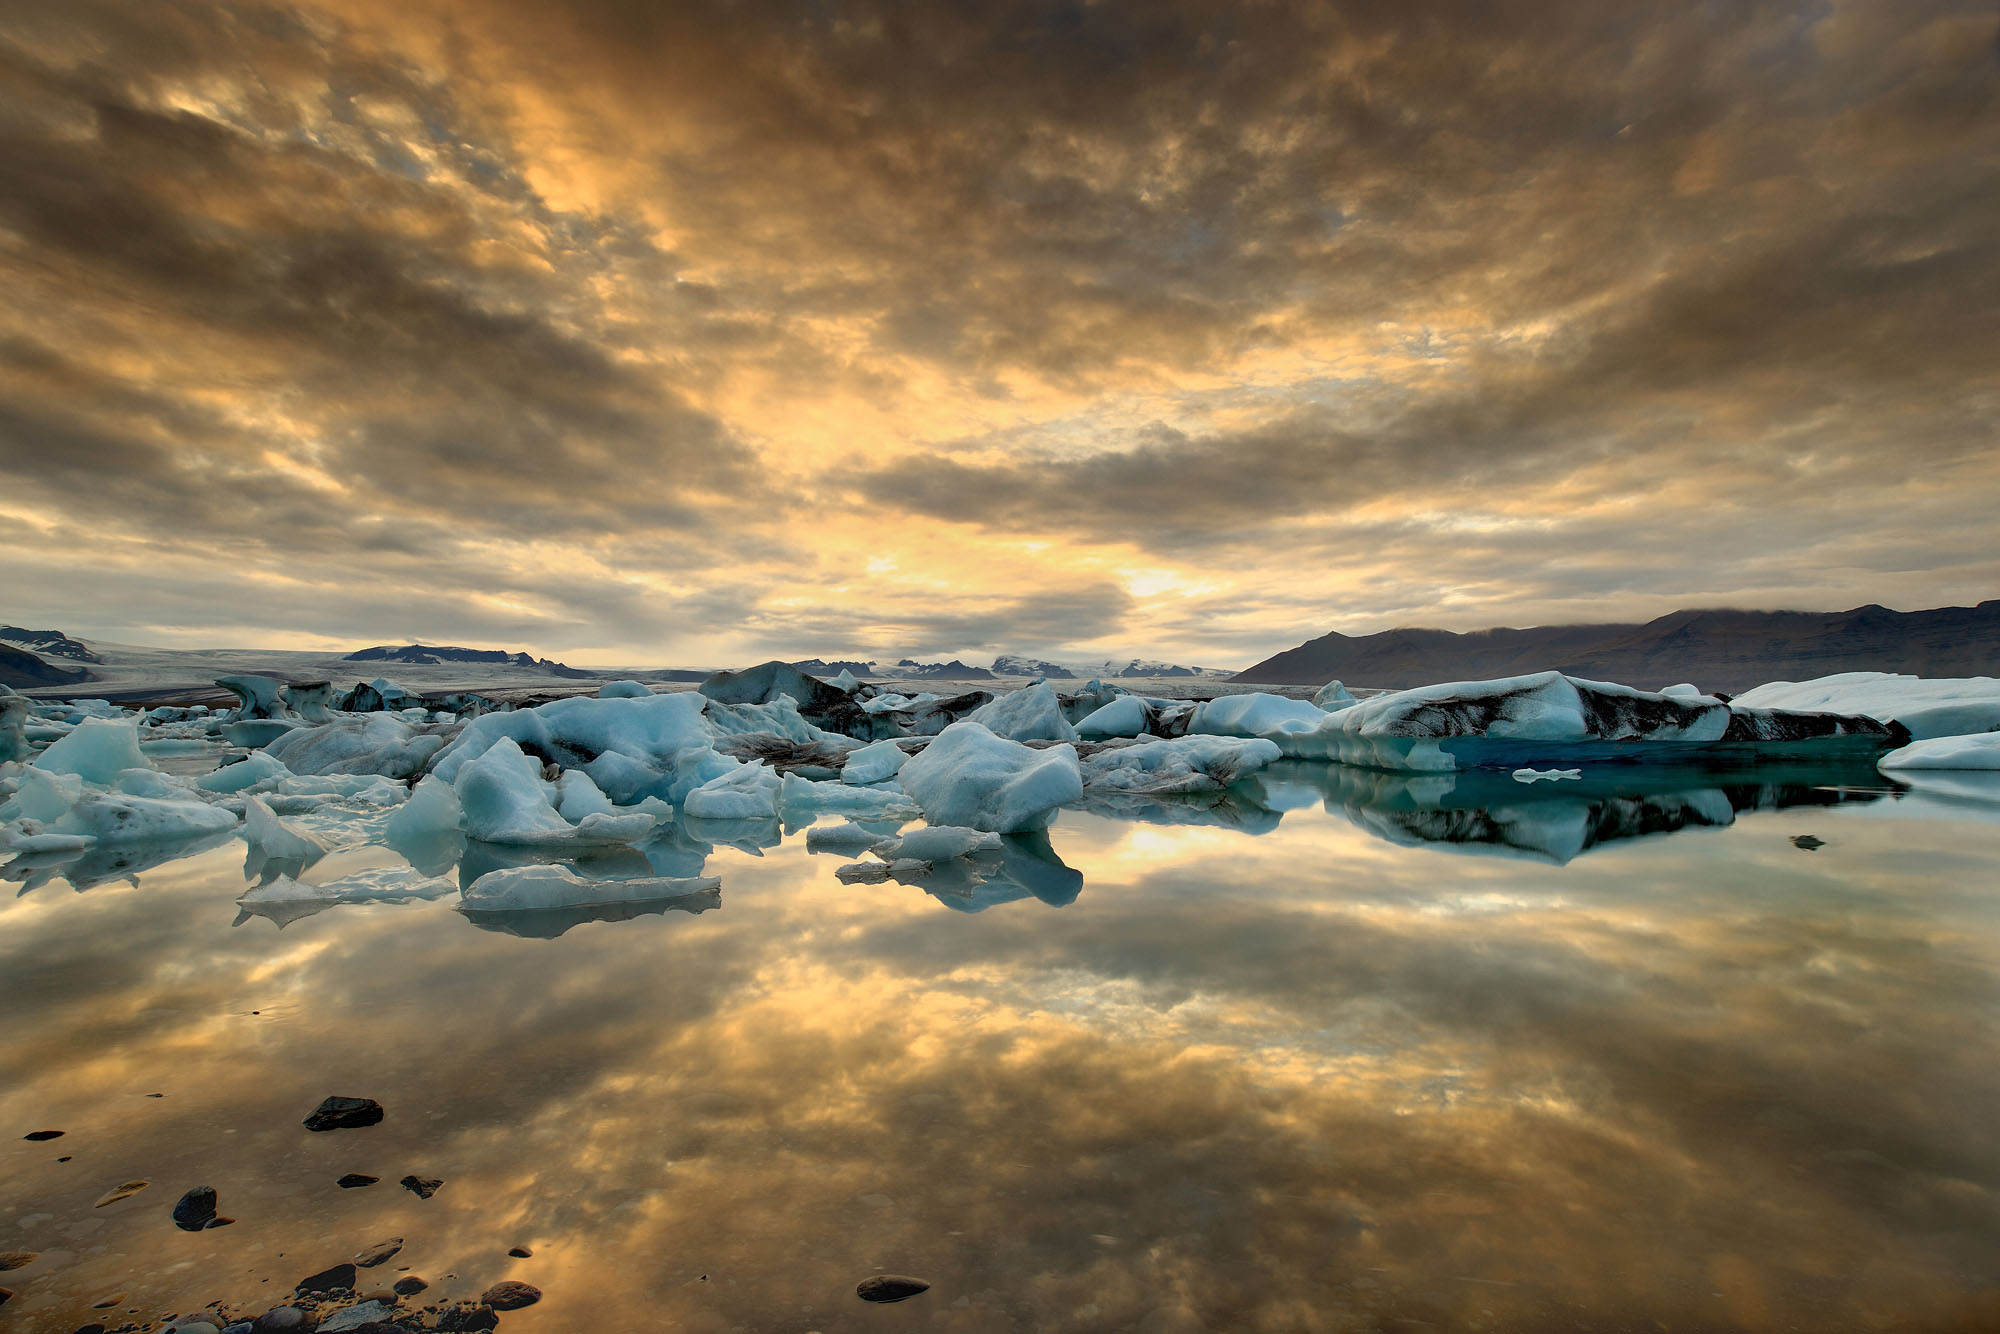 Die Lagune des Jökulsárlón Gletschersees voller Eisberge bei Sonnenuntergang mit dramatischen Wolken, die sich im See spiegeln.